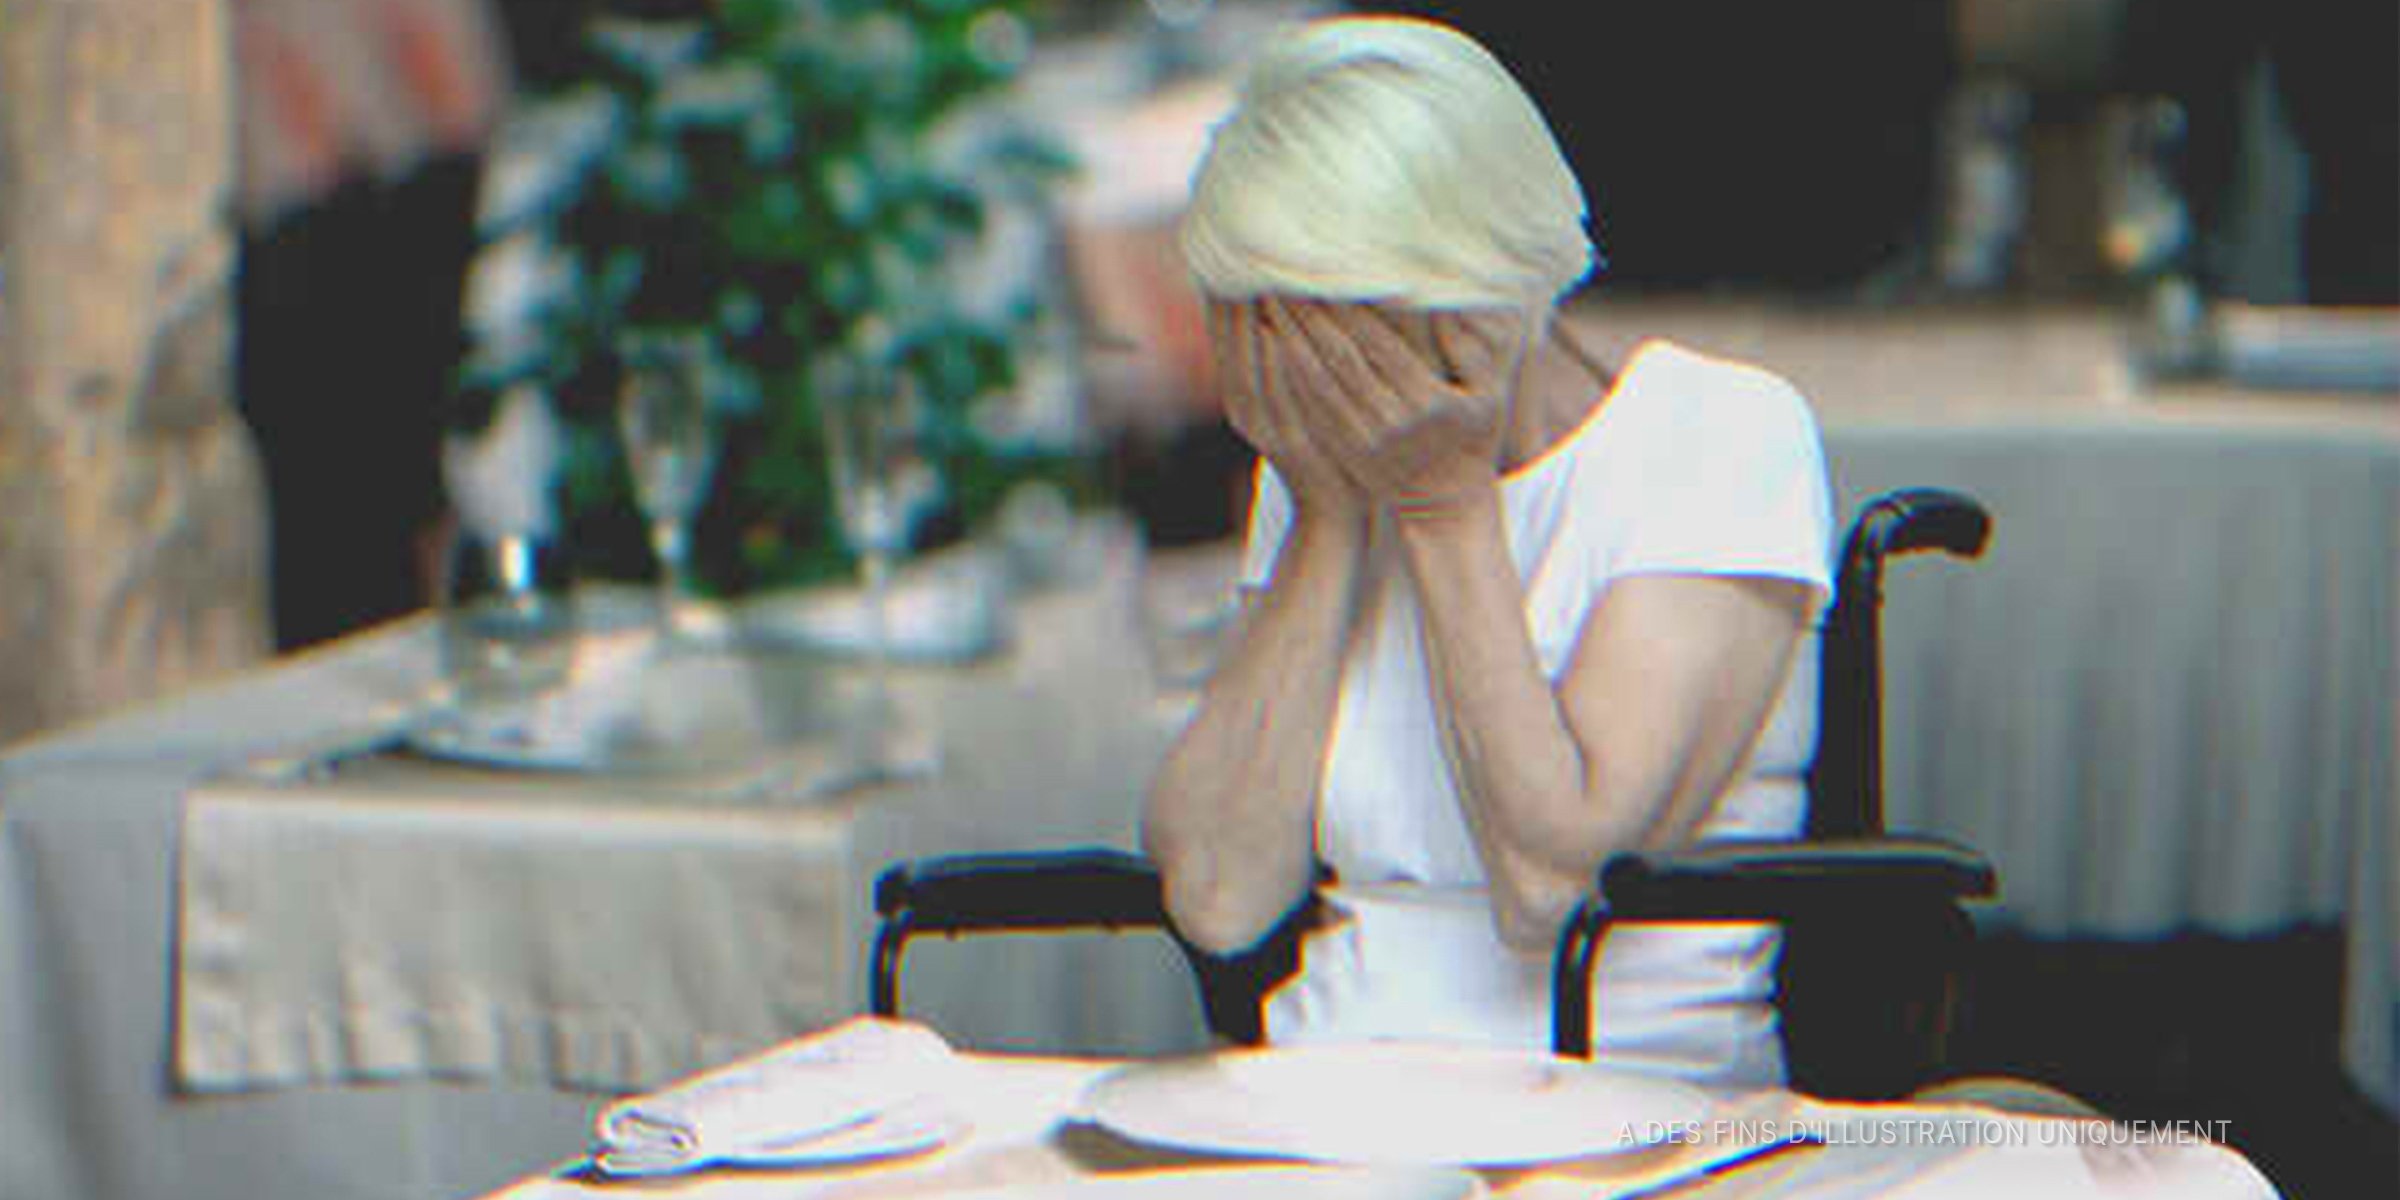 Une femme âgée qui pleure | Source : Shutterstock